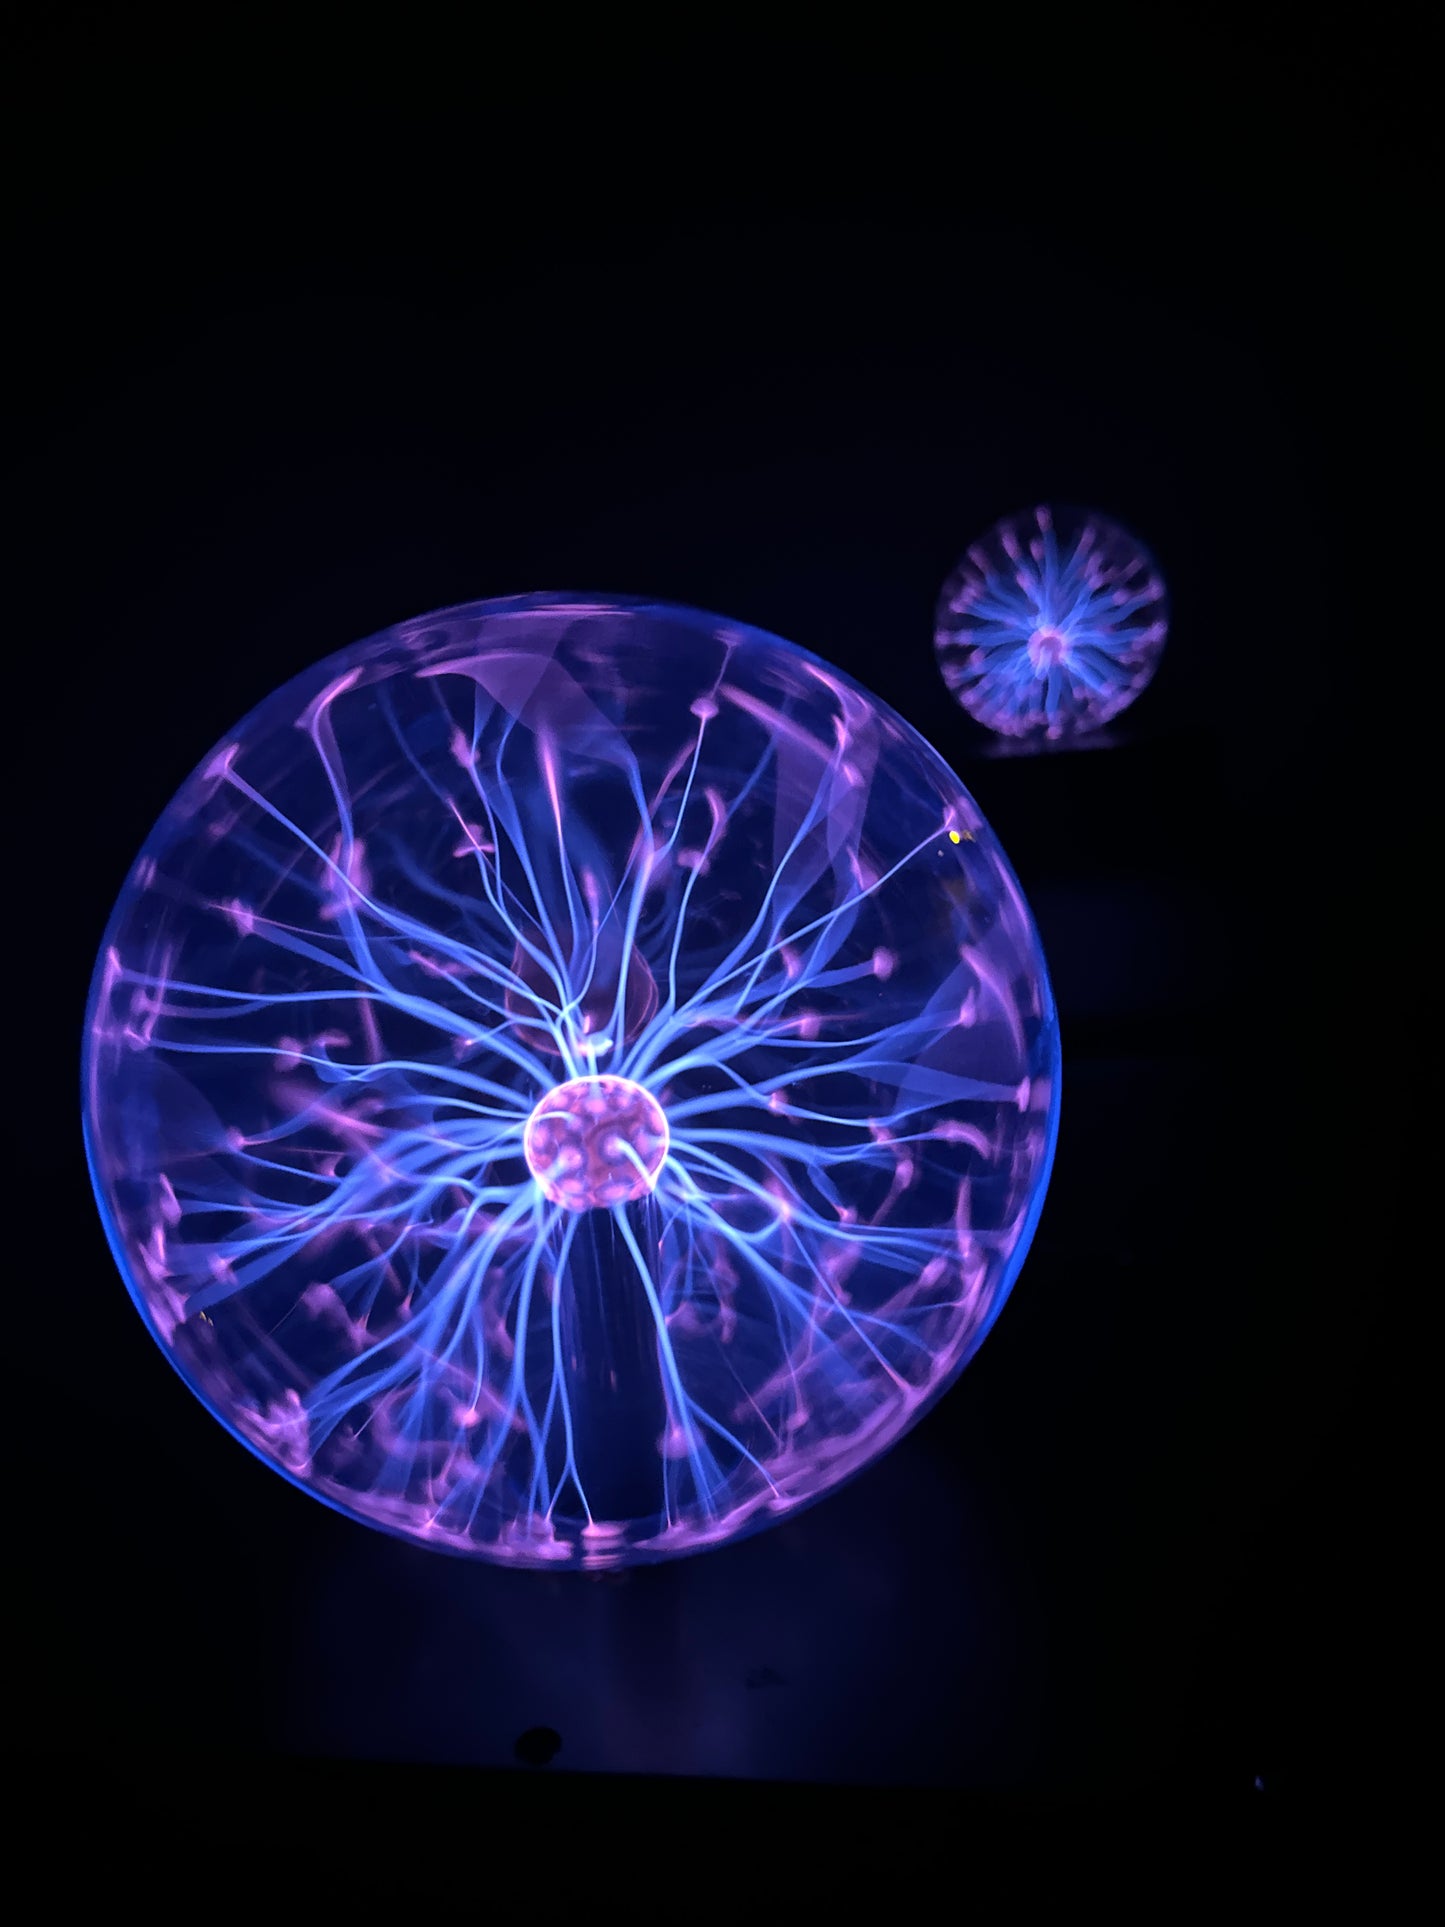 Plasma Energy Spheres